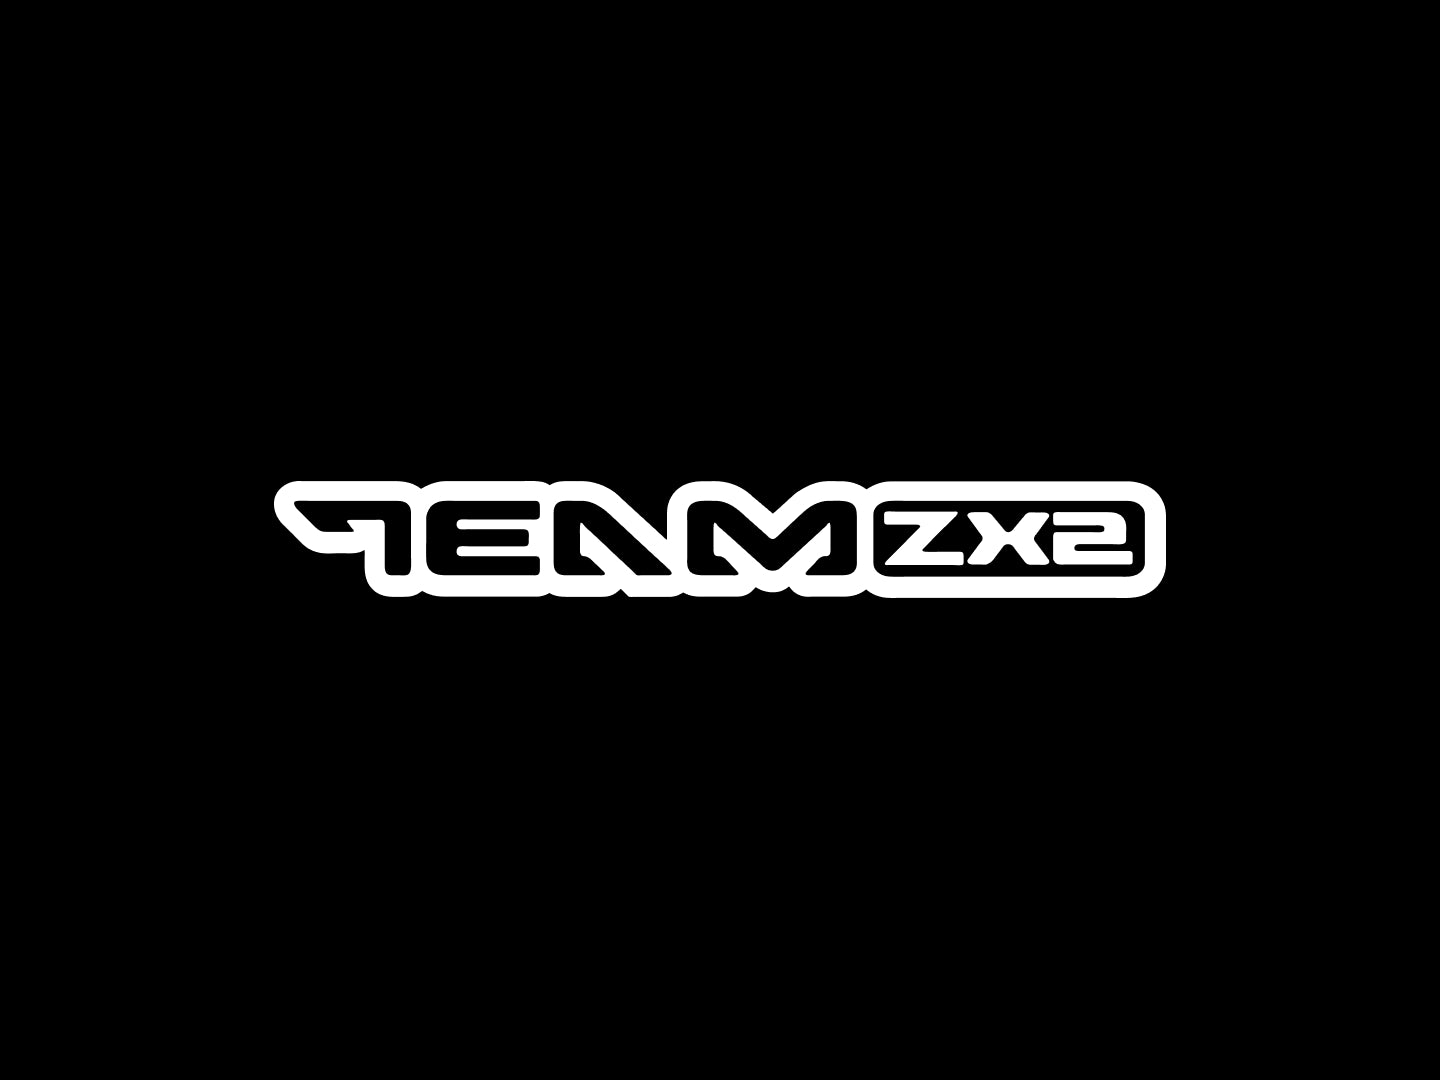 Team ZX2 Windshield Banner